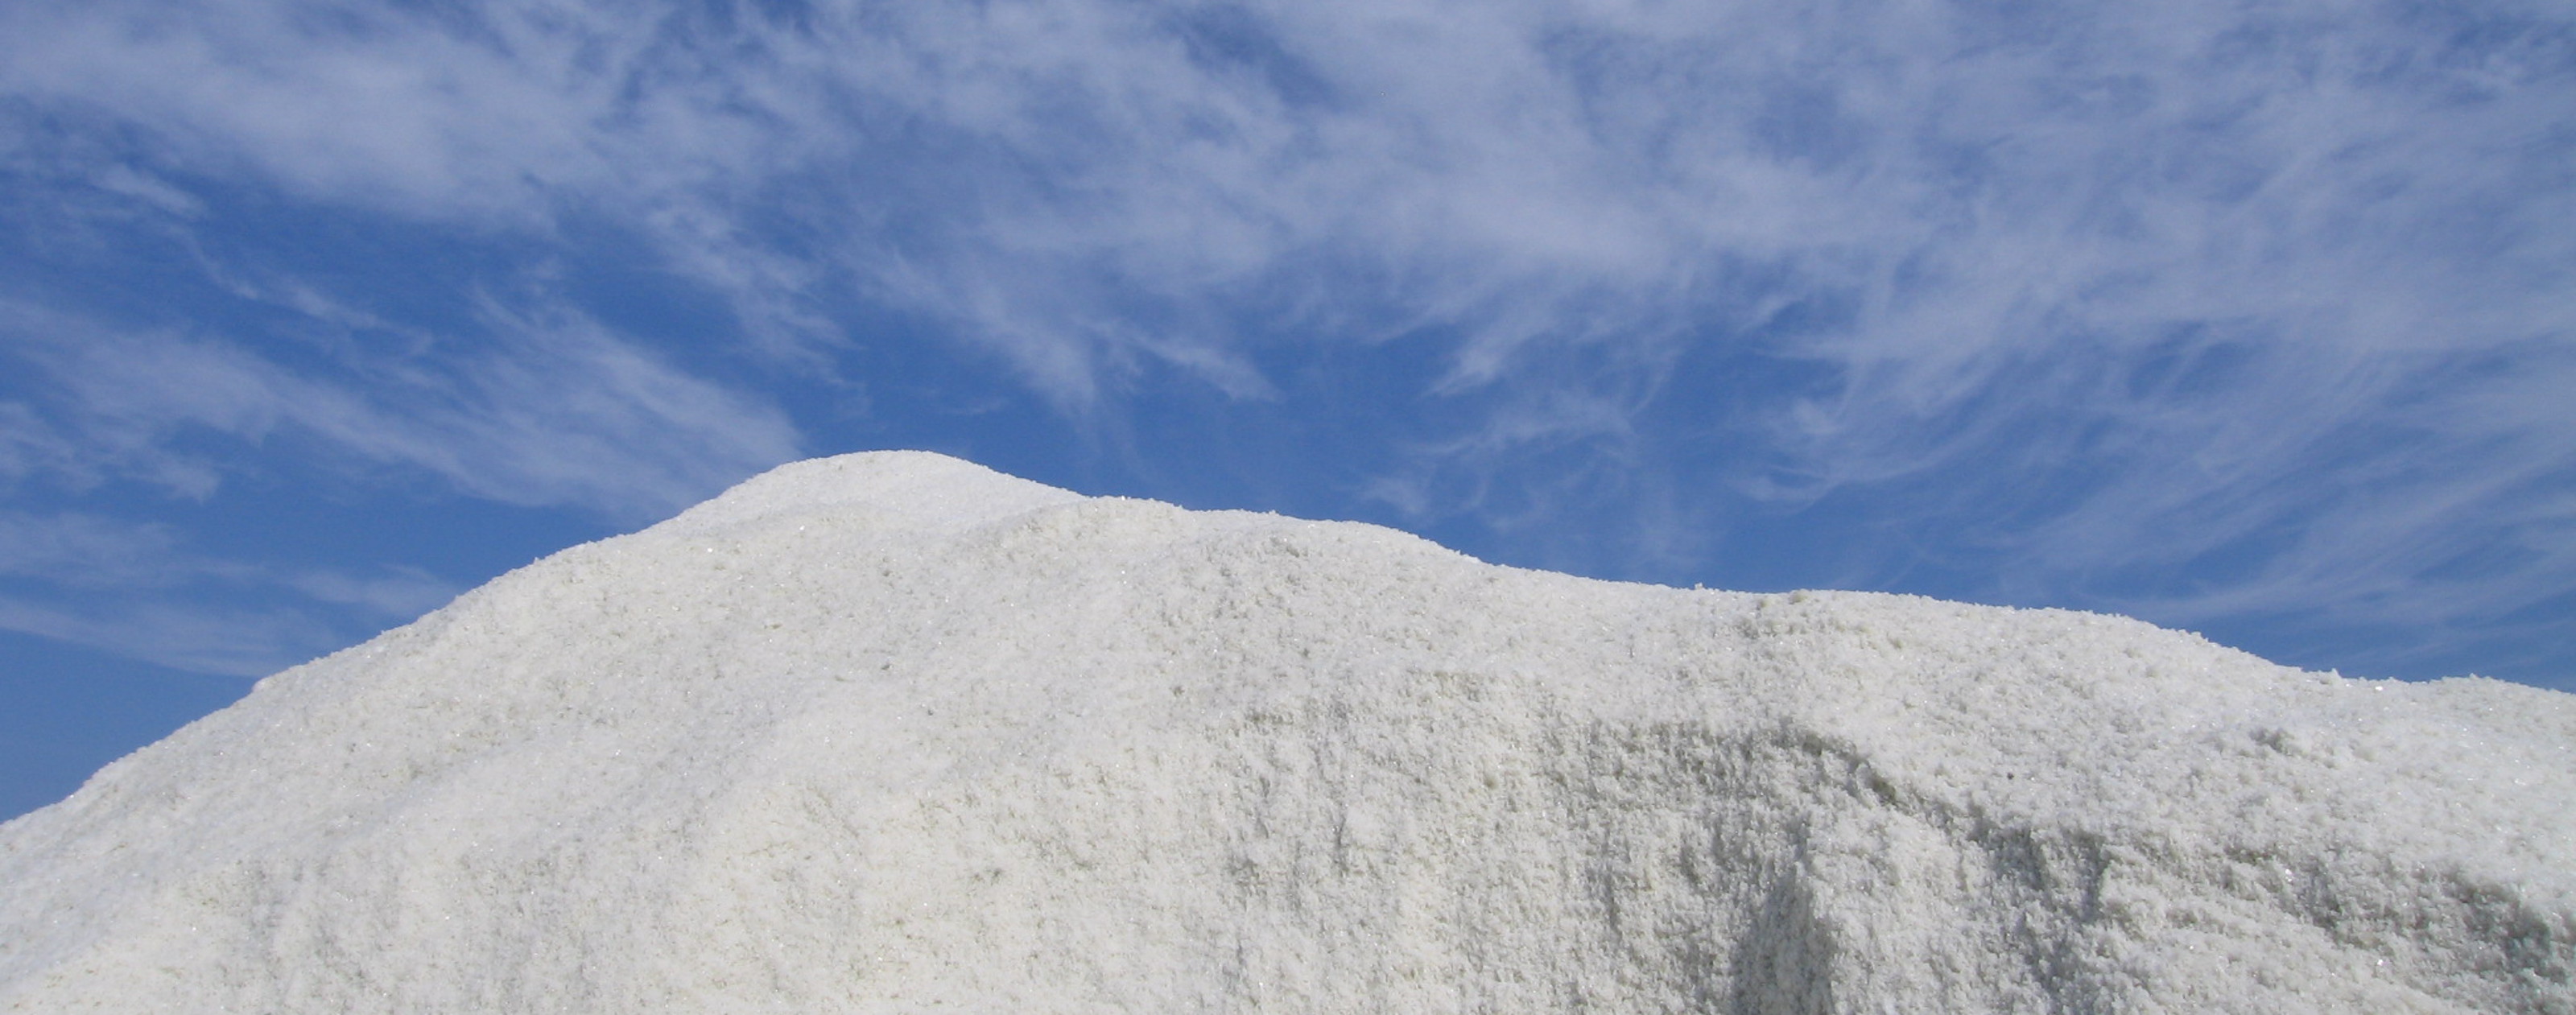 Le sel de l'île de Noirmoutier